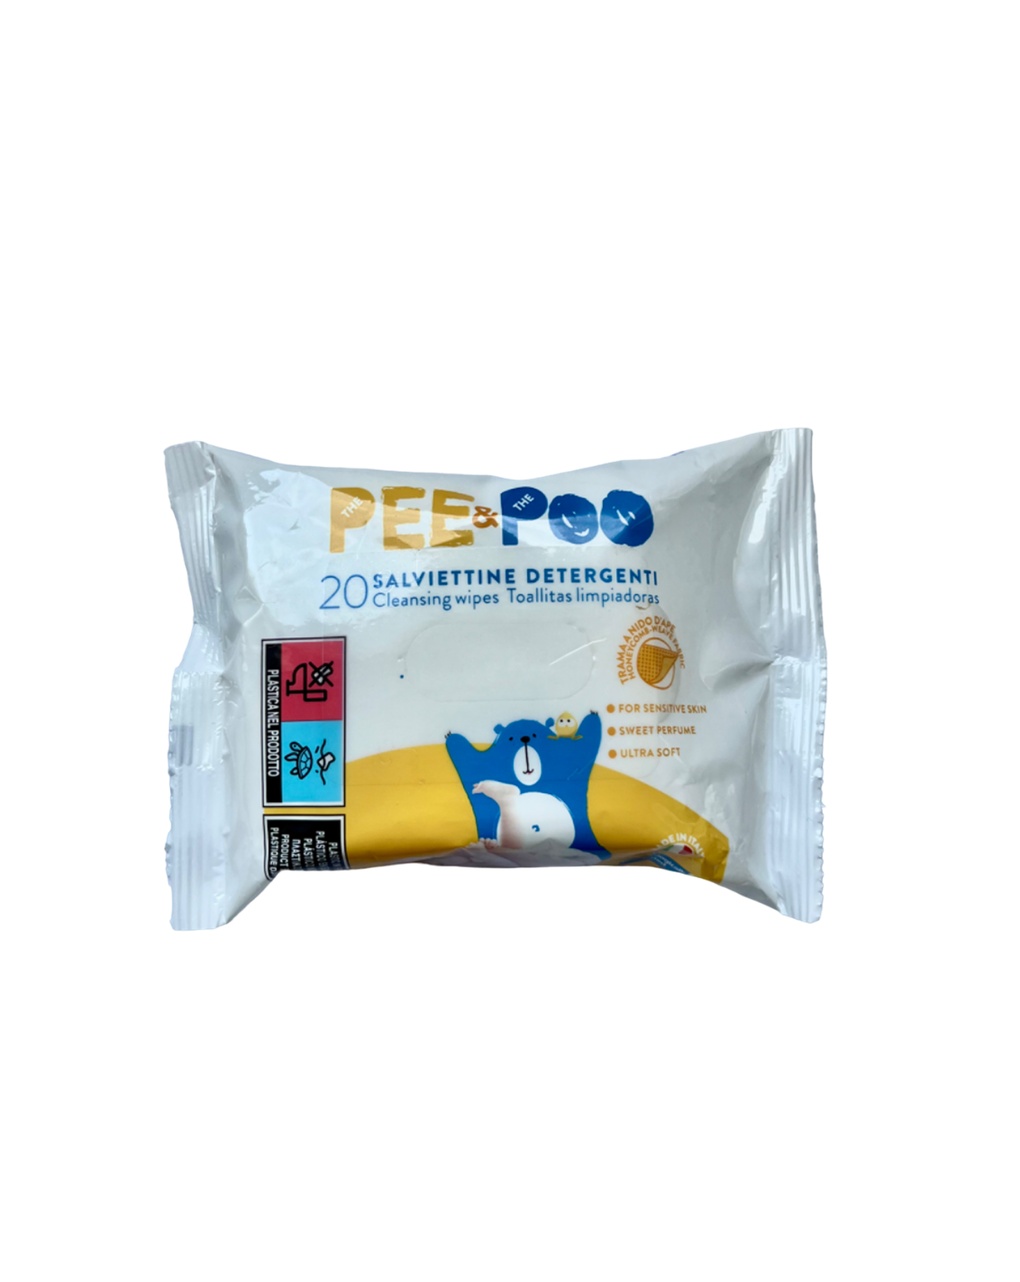 Salviettine detergenti 20 pezzi - pee&poo - The Pee & The Poo